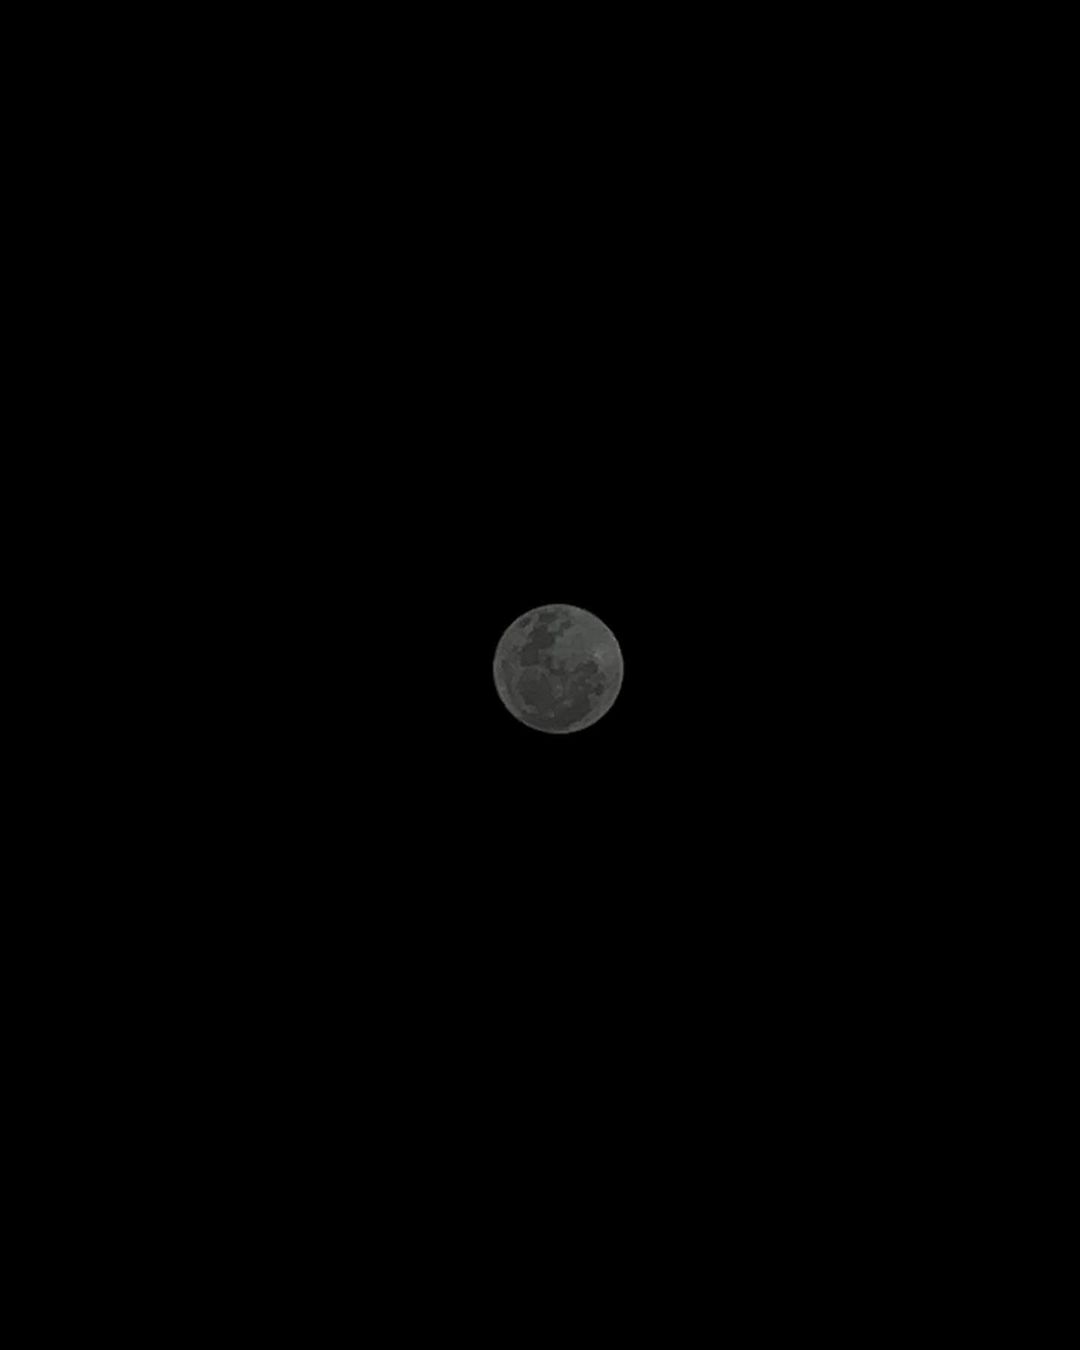 Imagem da lua publicada no Instagram Reprodução